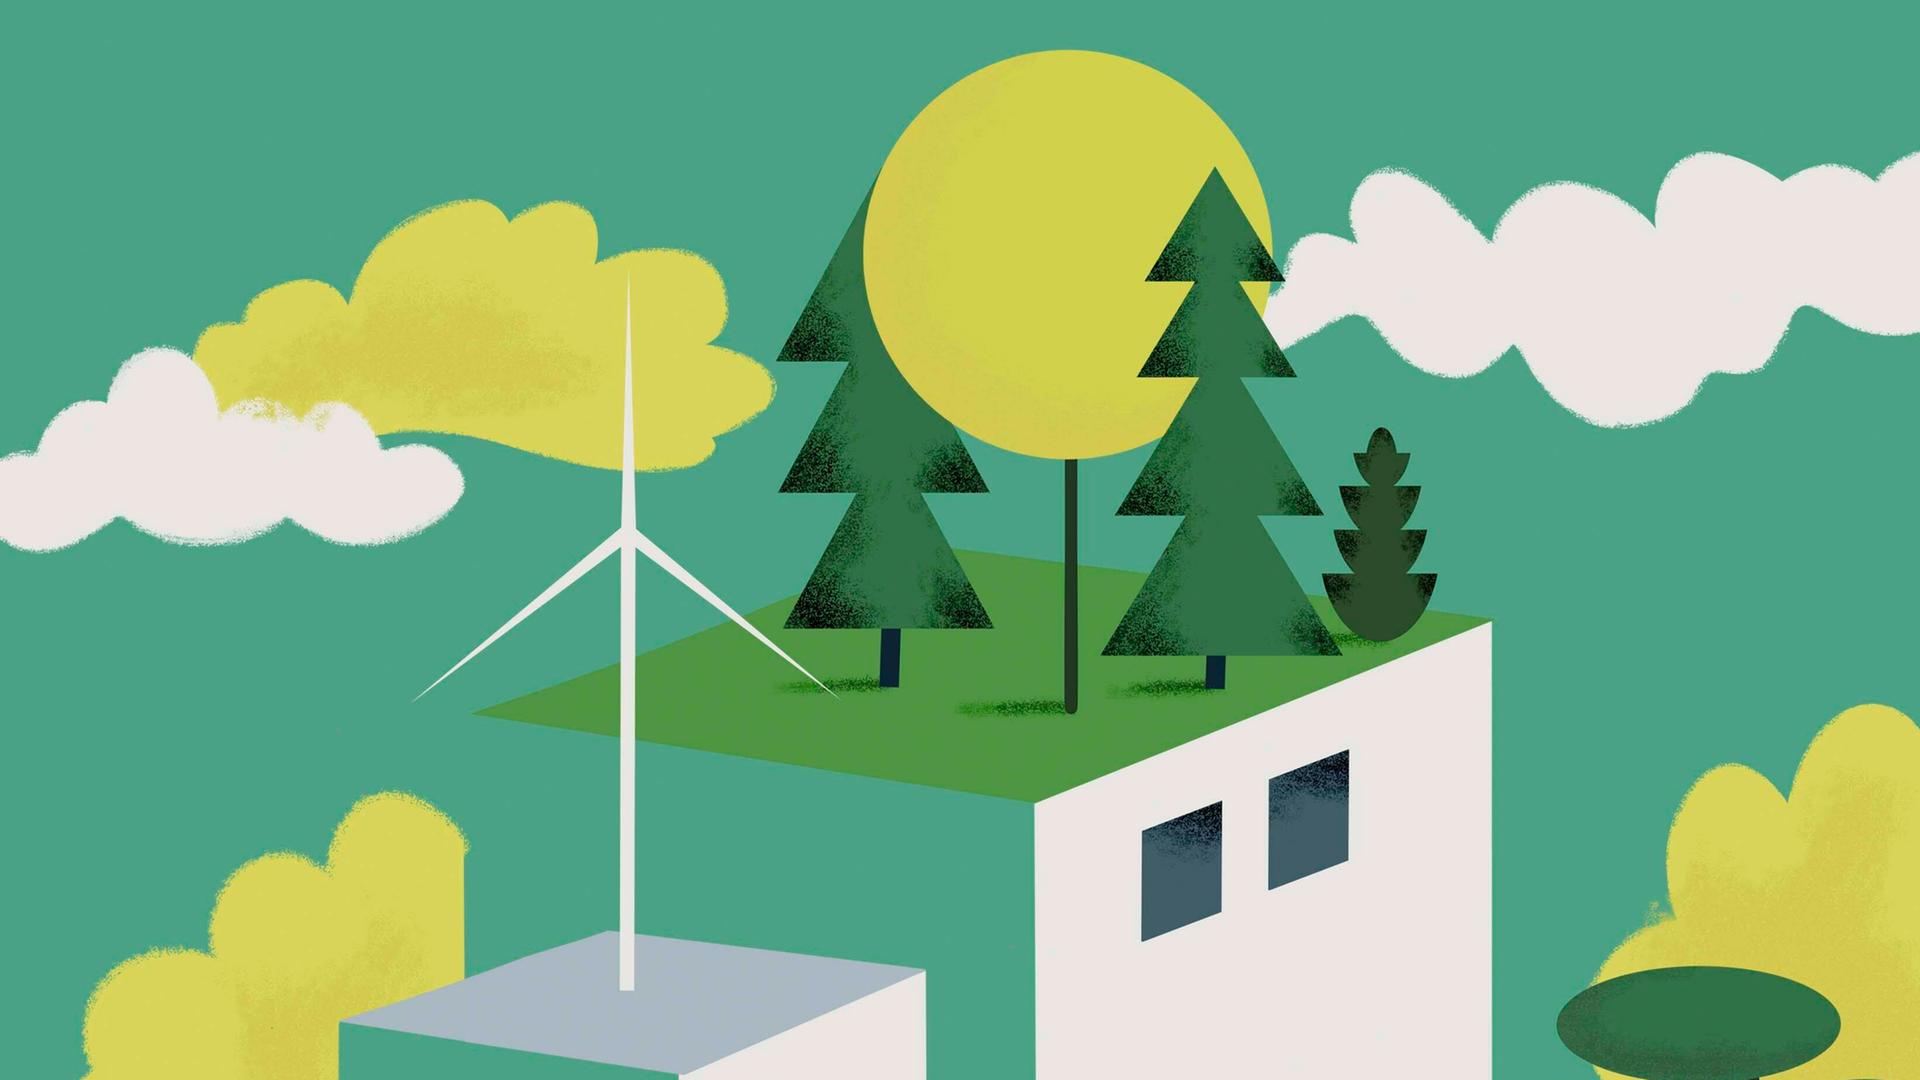 Illustration: Dachgärten und Windenergieanlage auf grünen Gebäuden.